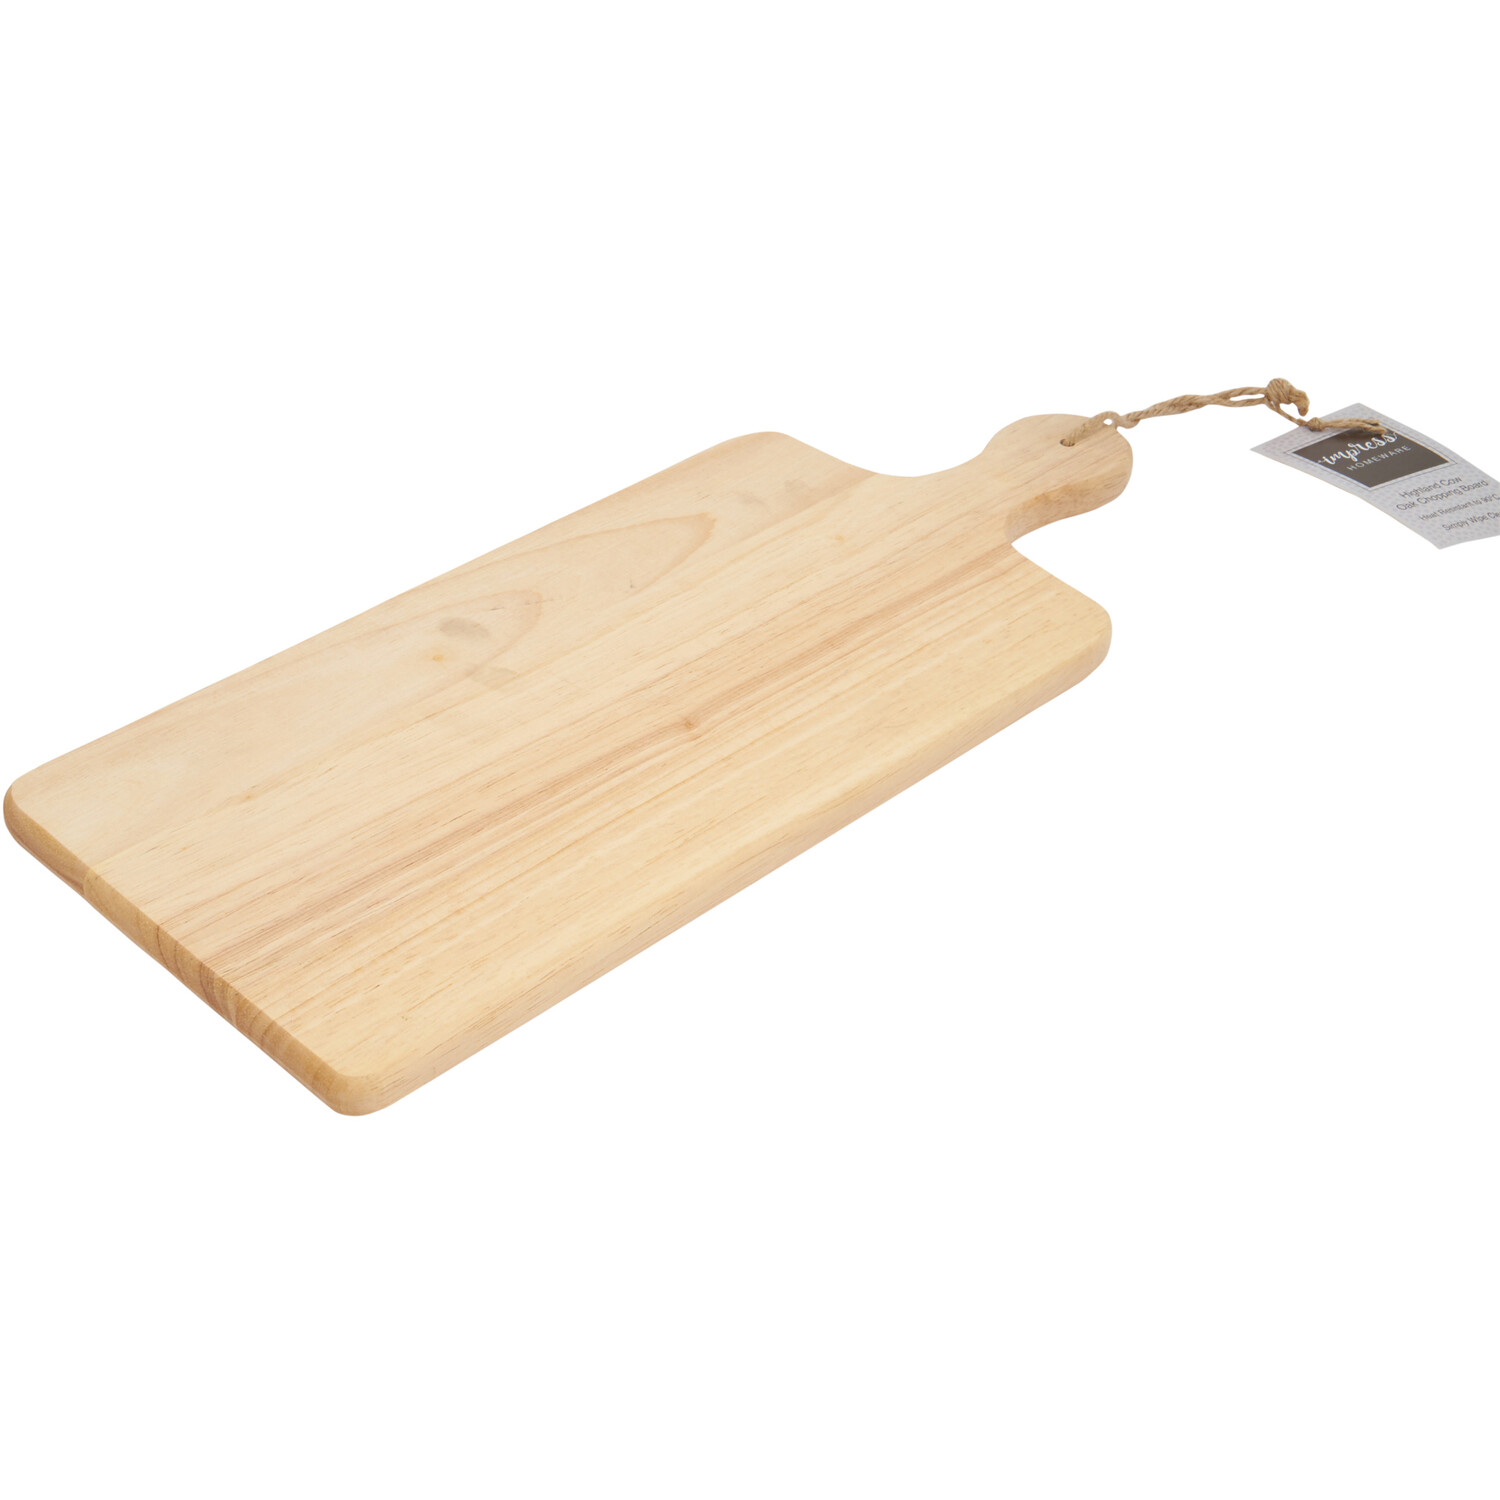 Highland Cow Paddle Chopping Board - Oak Image 4